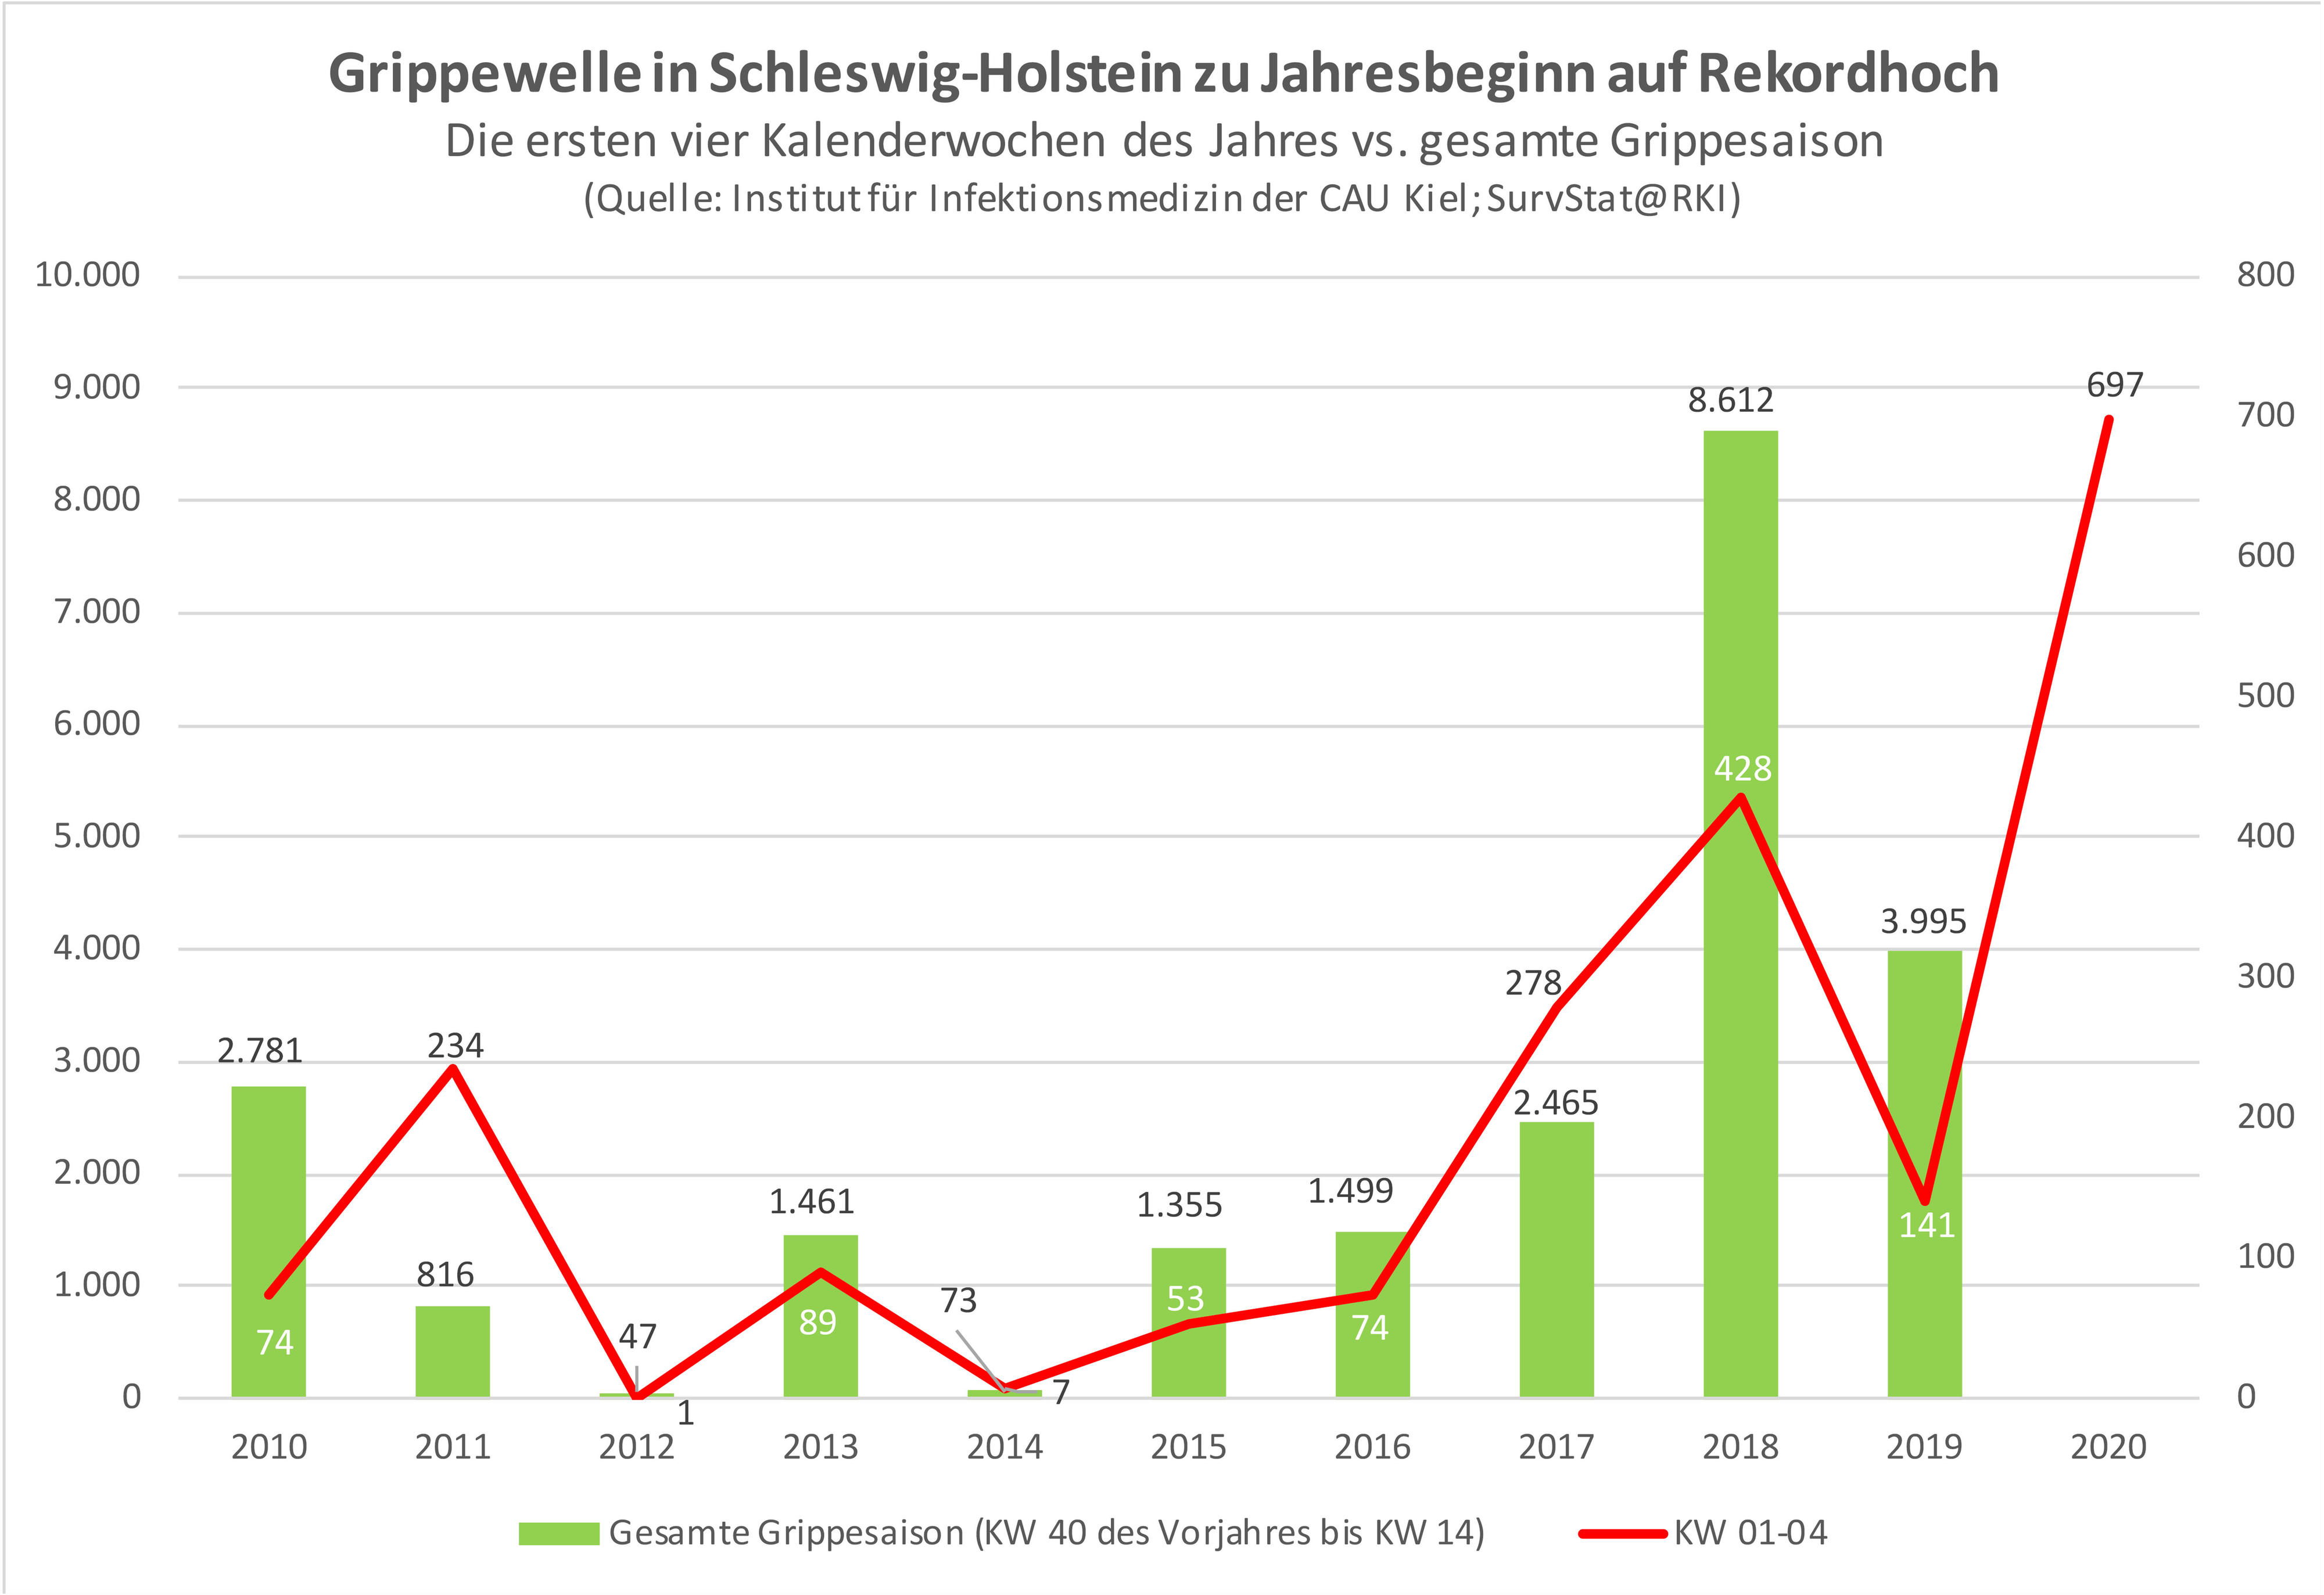 Grafik über den jahreszeitlichen Verlauf der ersten vier Grippewochen in Schleswig-Holstein im Zeitraum 2010 bis 2020